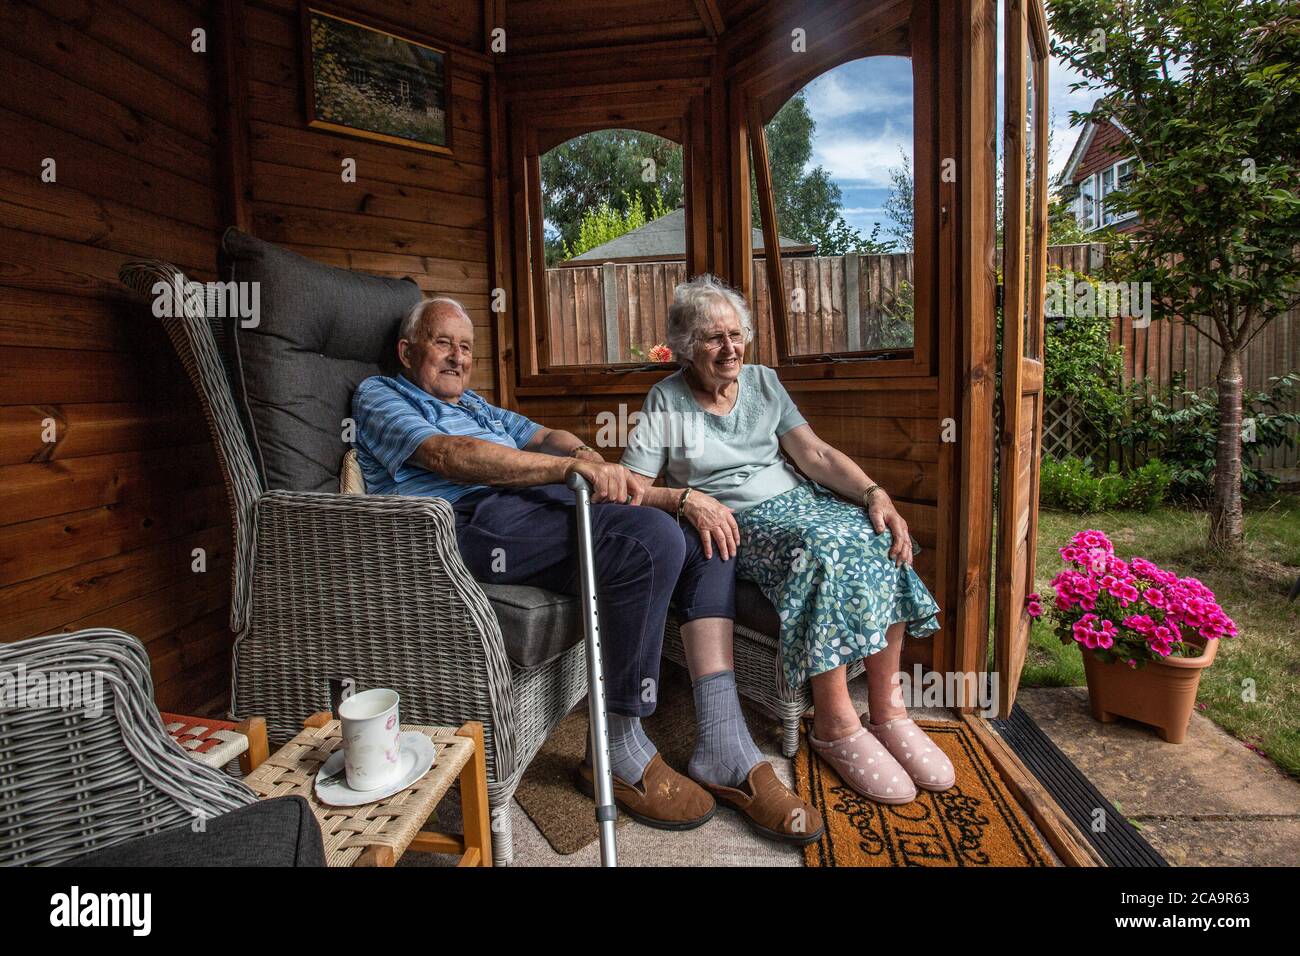 Couple de personnes âgées dans leurs années 80 appréciant le temps chaud d'été dans leur jardin d'été maison, Angleterre, Royaume-Uni Banque D'Images